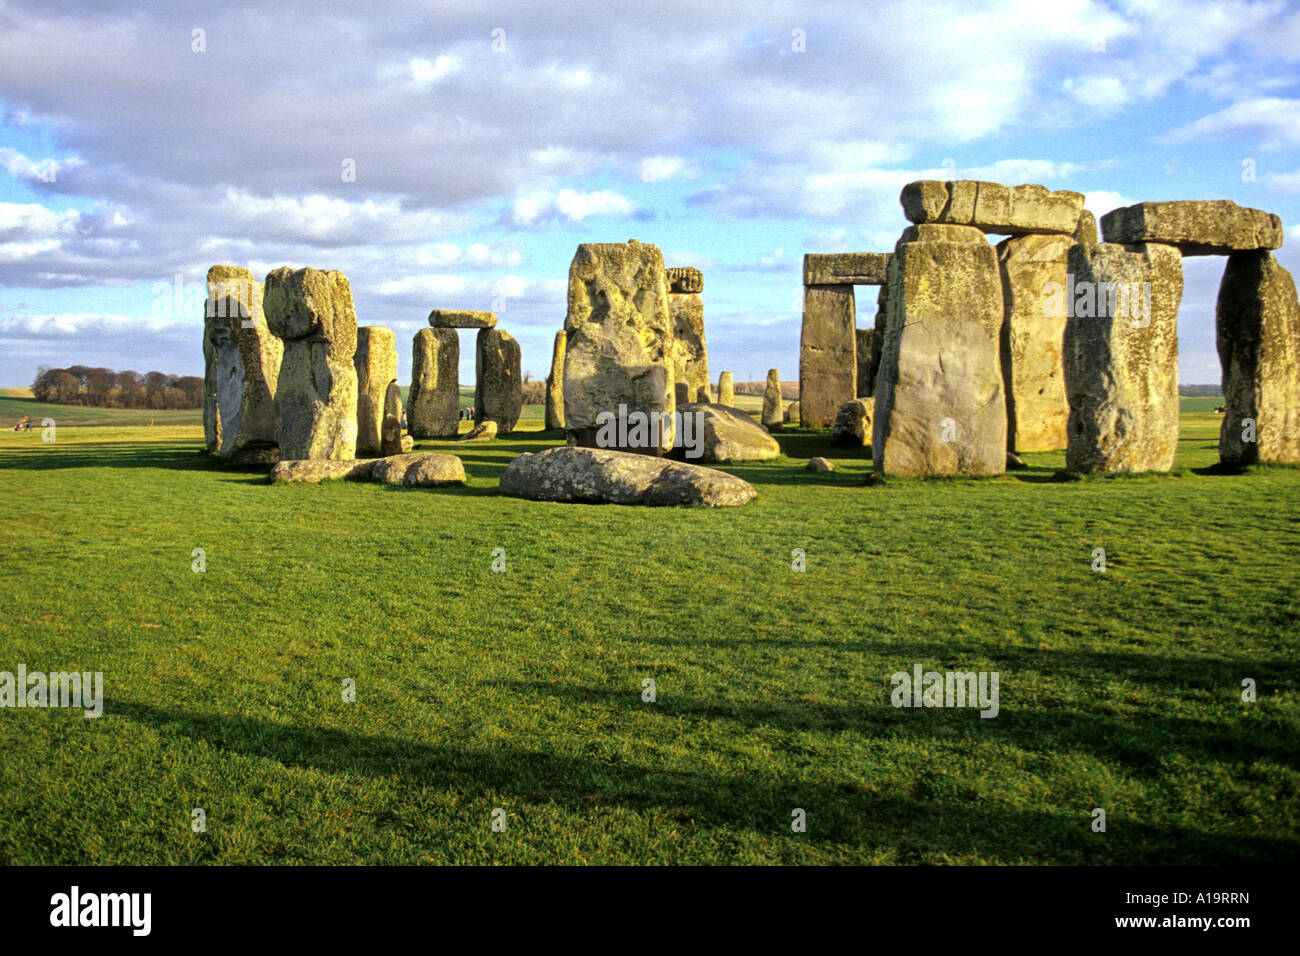 UNESCO World Heritage neolithischen Steinzeit Ruinen von Stonehenge in der englischen Landschaft in der Nähe von Amesbury Vereinigtes Königreich Stockfoto